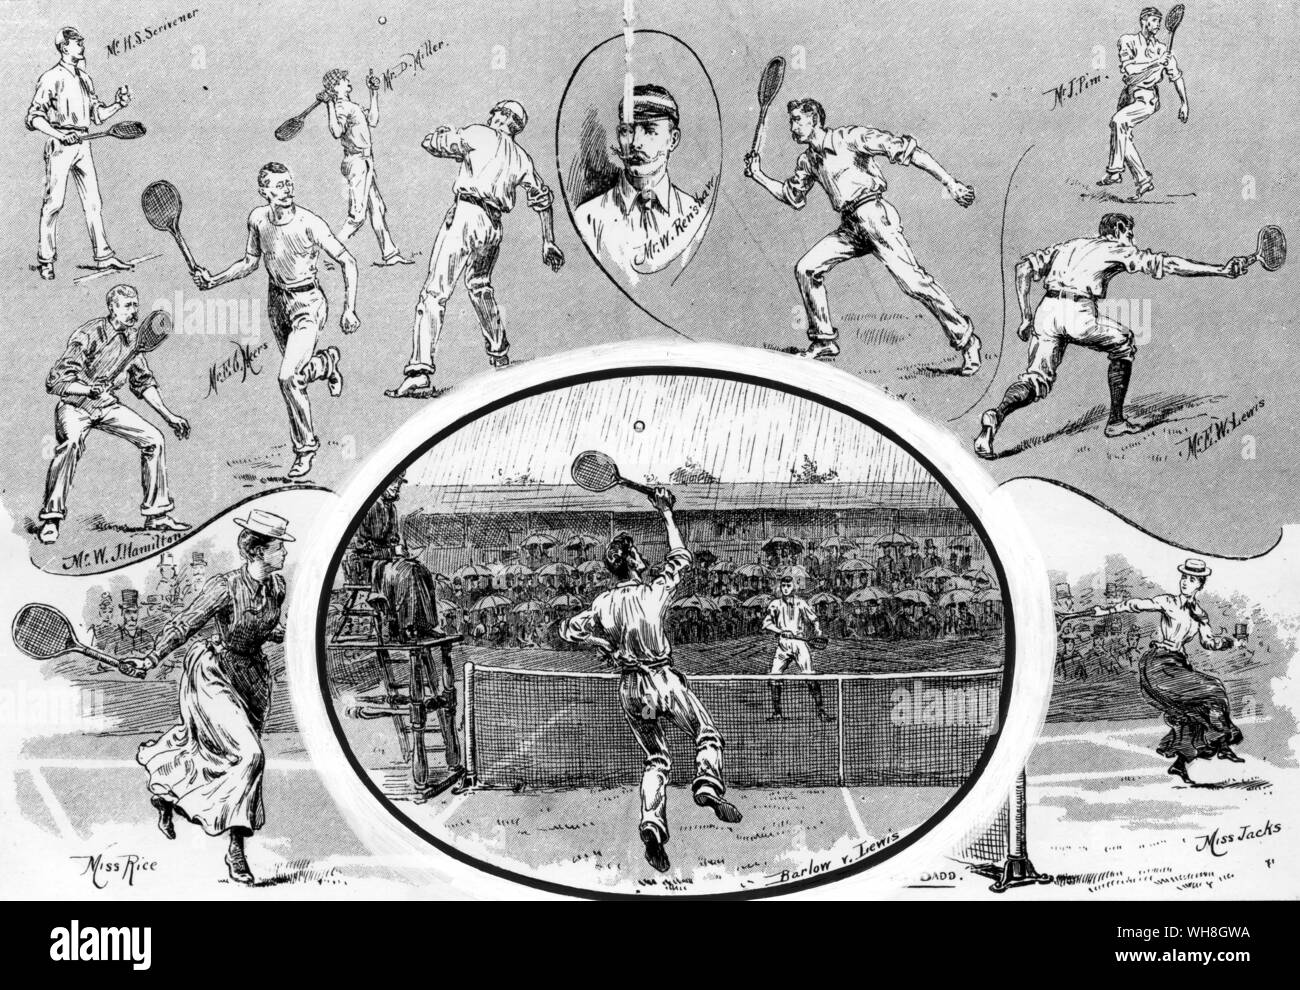 Lawn Tennis Championships in Wimbledon. Das halbfinale zwischen H S Barlow und E W Lewis im Juli 1890. Die Enzyklopädie von Tennis Seite 89. Stockfoto